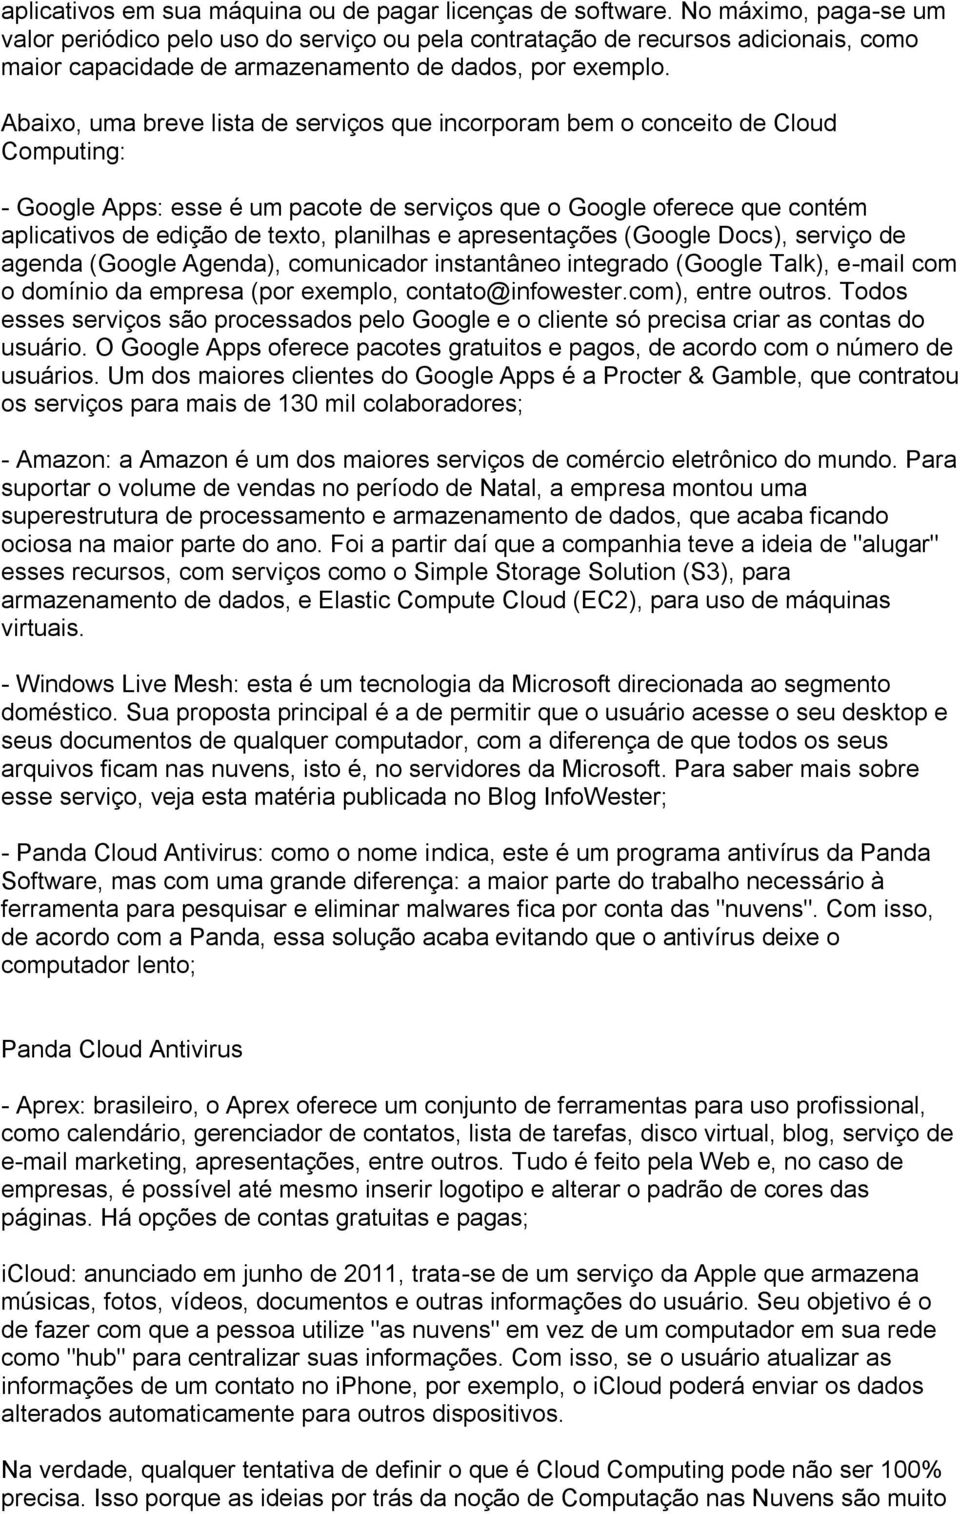 Abaixo, uma breve lista de serviços que incorporam bem o conceito de Cloud Computing: - Google Apps: esse é um pacote de serviços que o Google oferece que contém aplicativos de edição de texto,